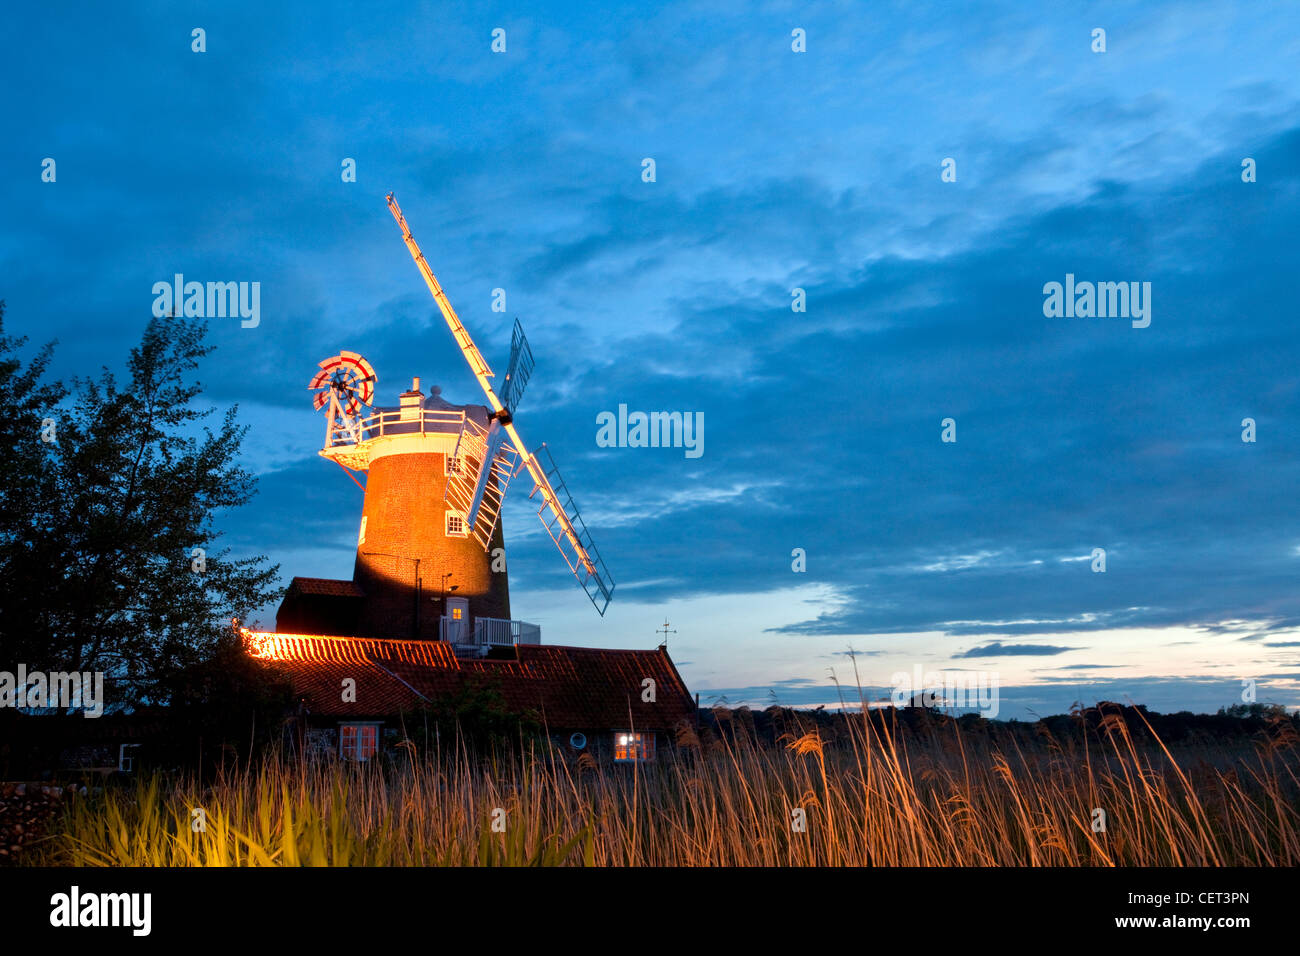 Cley windmill un grado ll elencati tower mill originariamente costruito nei primi anni del XIX secolo, illuminata di notte. Il mulino a vento è b Foto Stock